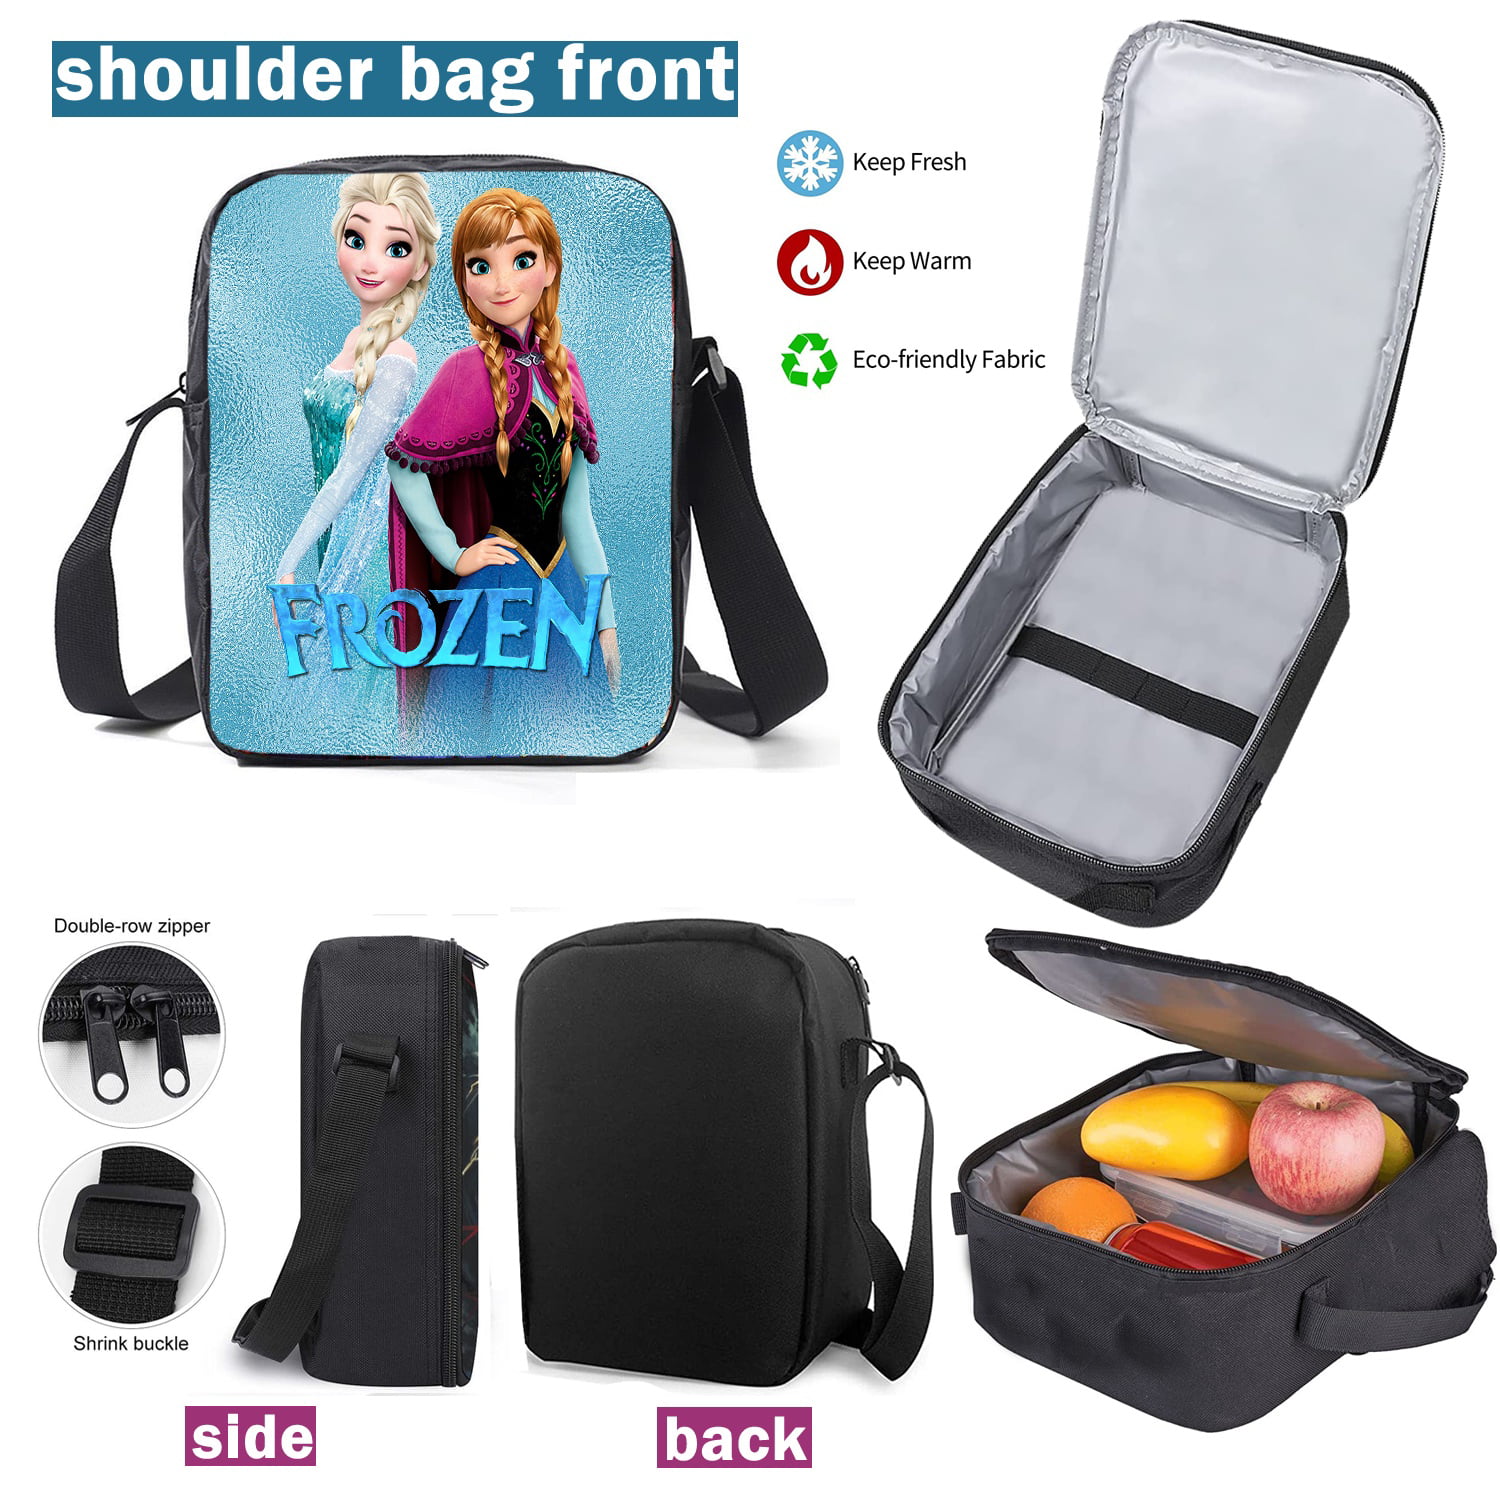 Frozen 2 Ice Princess 2 Elsa Ladies Pouch Bag Silver Top for sale online |  eBay